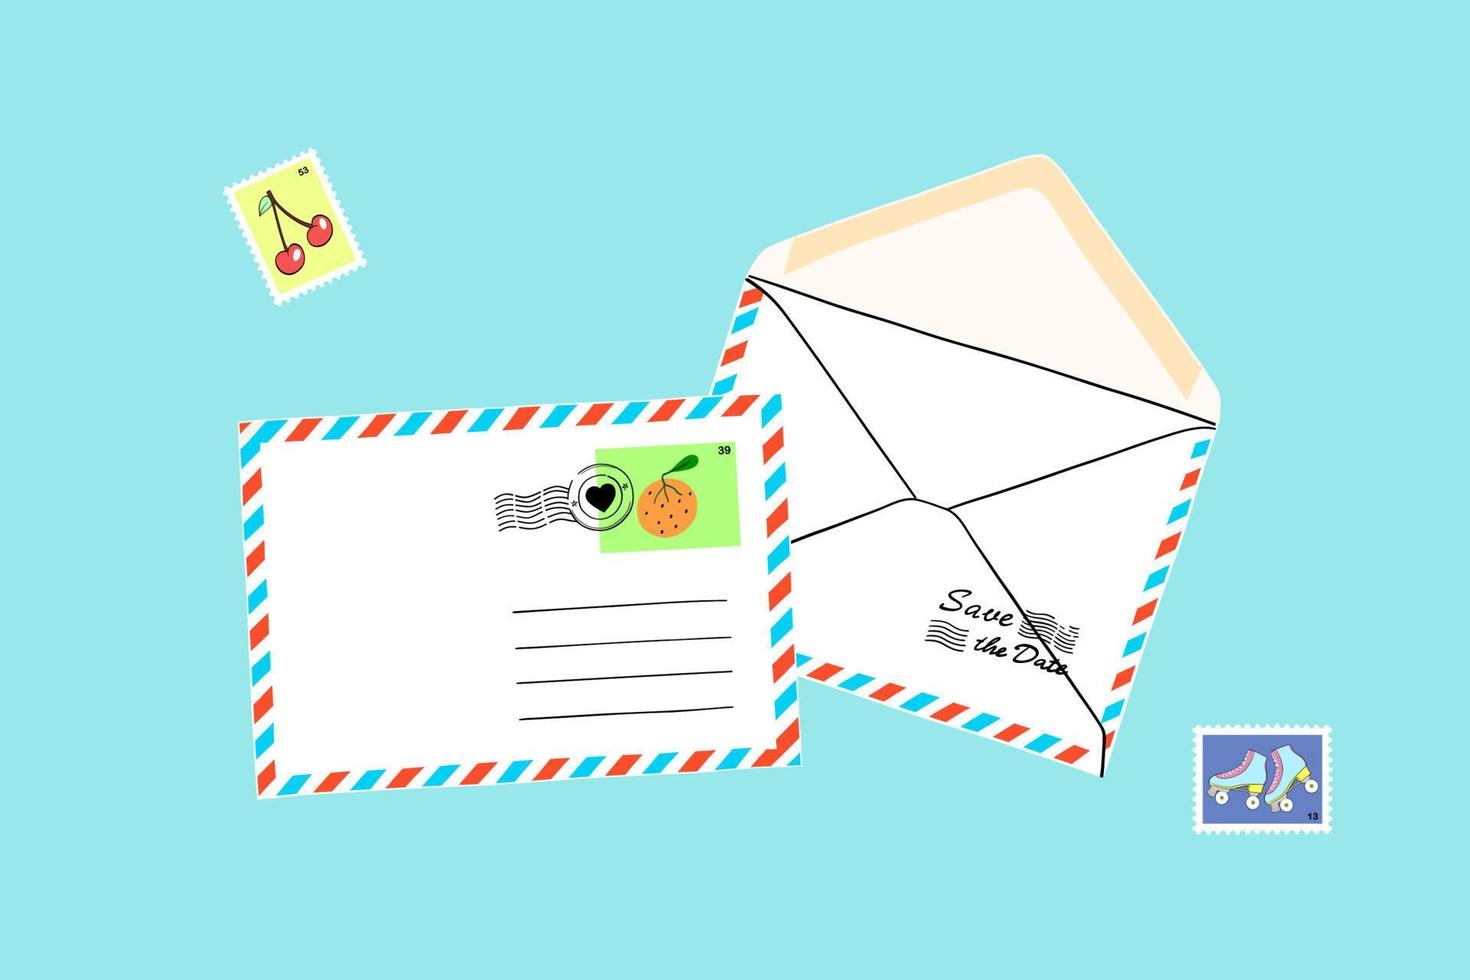 ensemble postal de dessin animé. enveloppes artisanales avec divers timbres postaux, cachets de la poste. illustration de vecteur coloré dessin animé plat